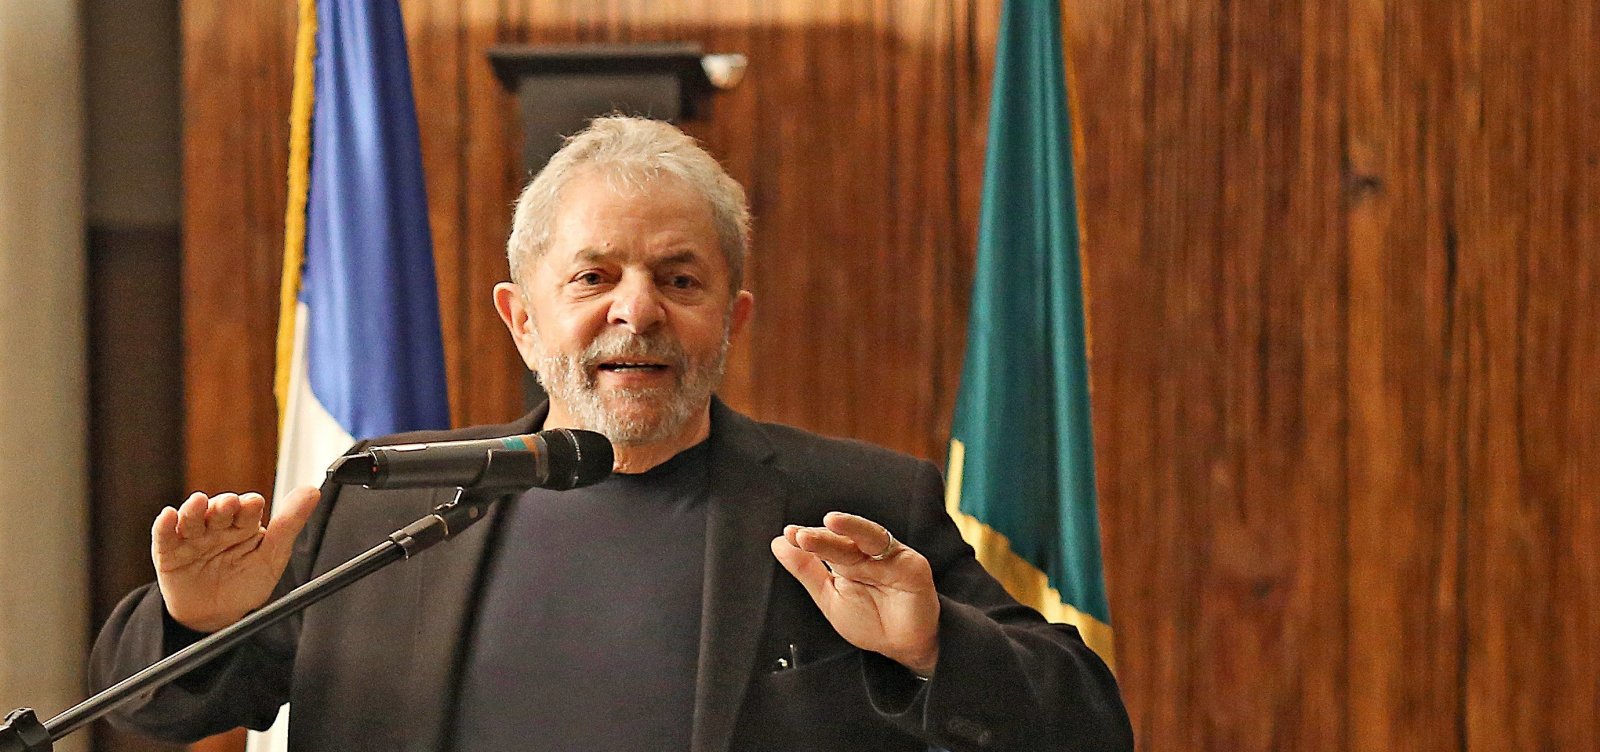 Palocci diz que Lula recebeu dinheiro em espécie de propina da Odebrecht